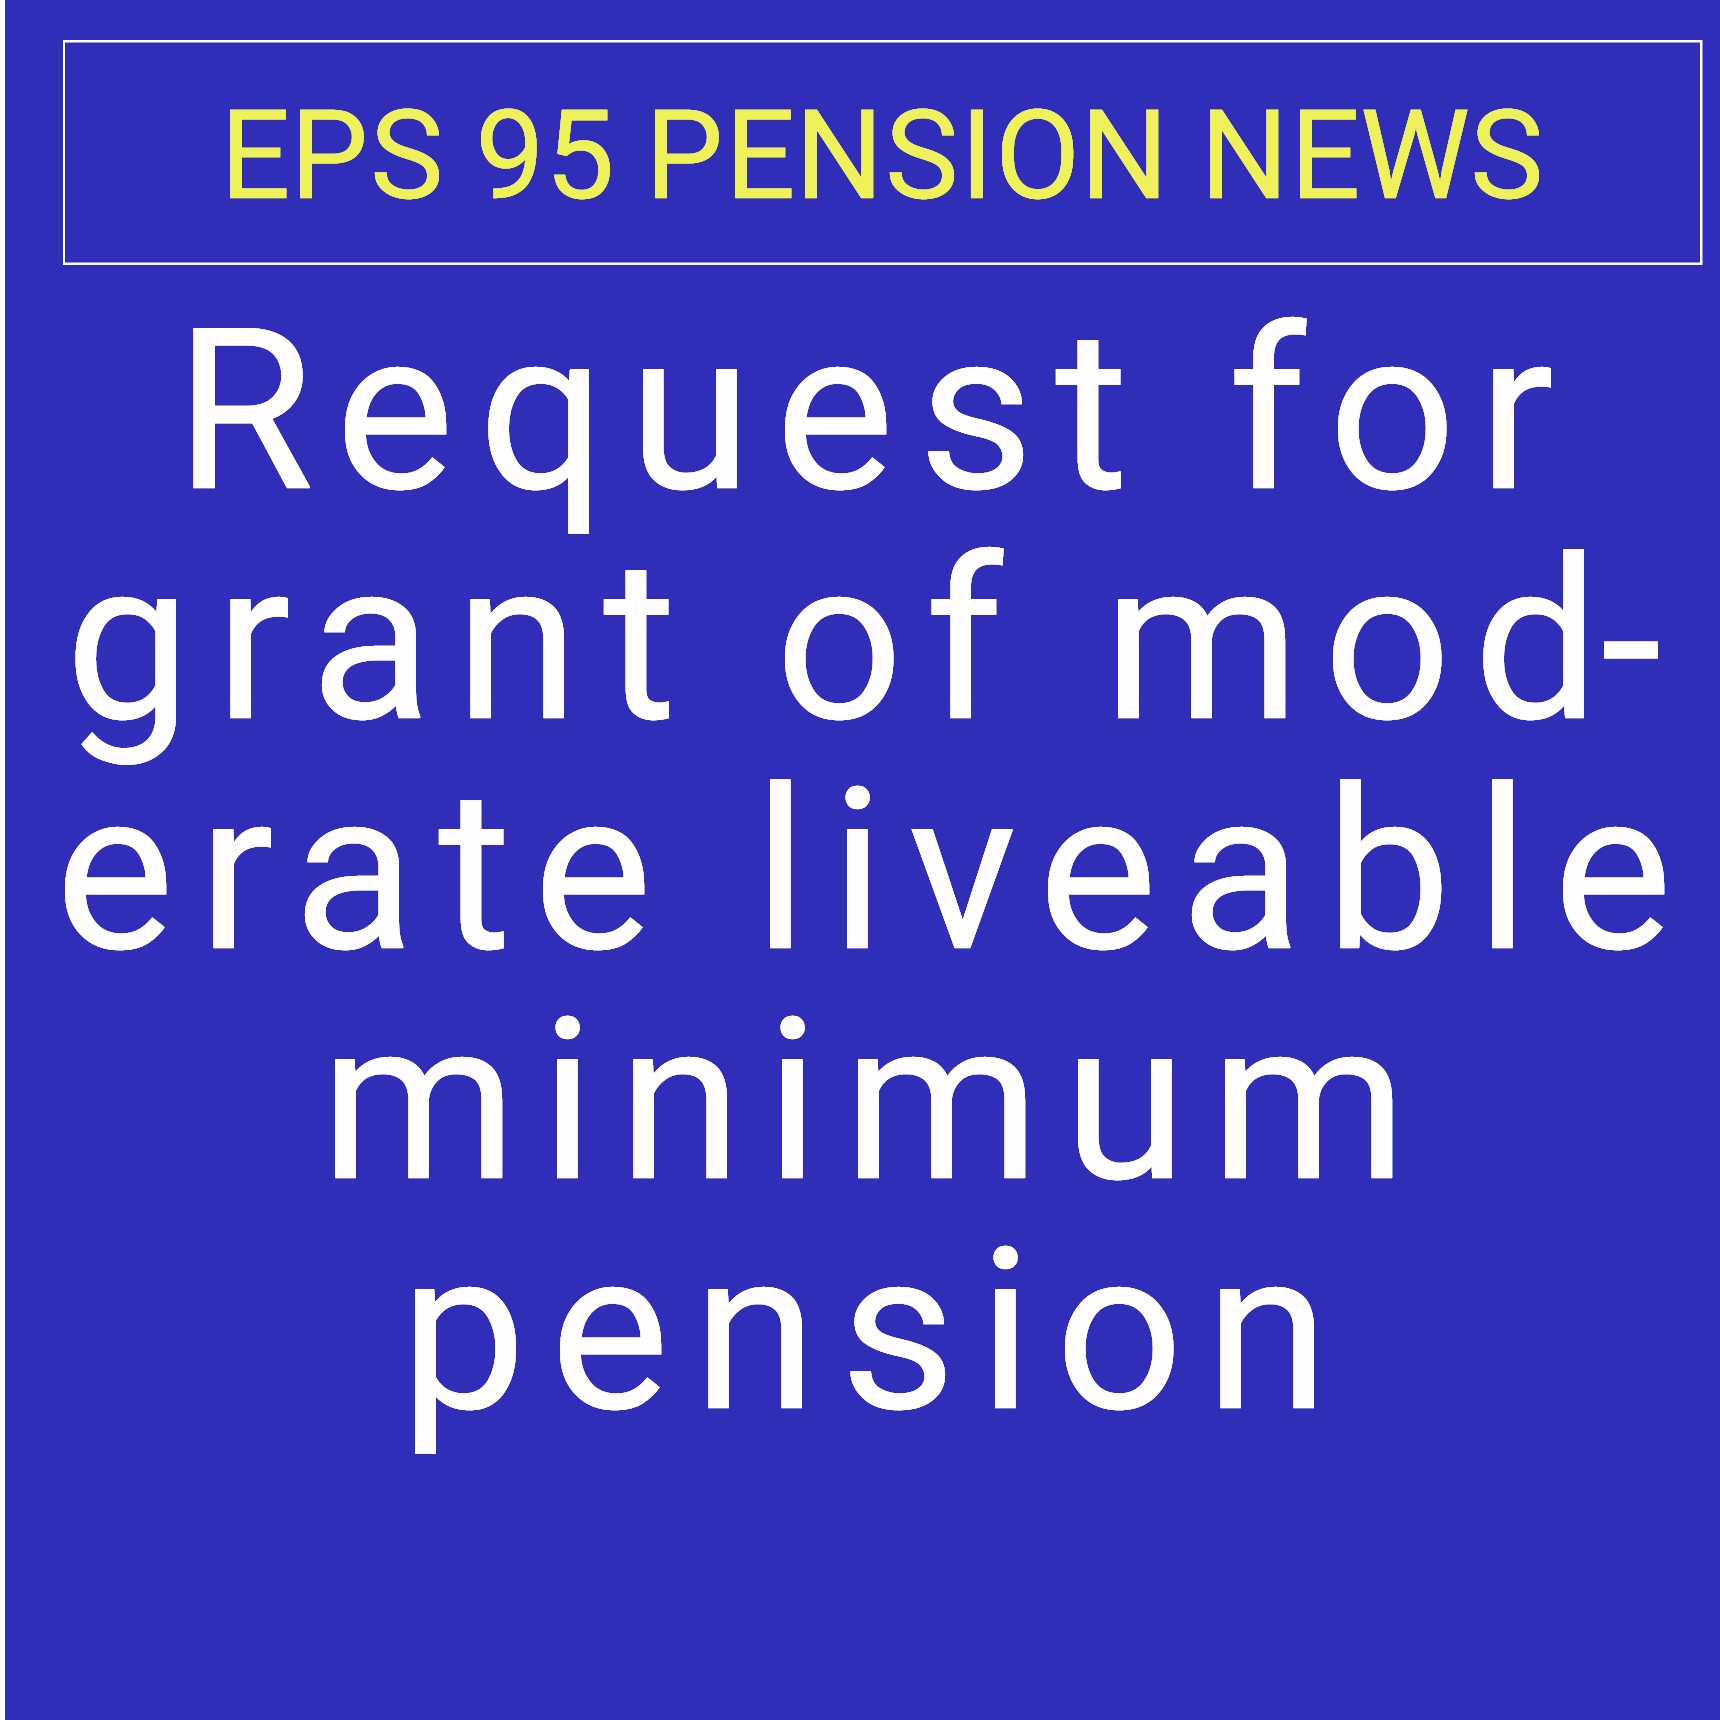 Demand For minimum Pension